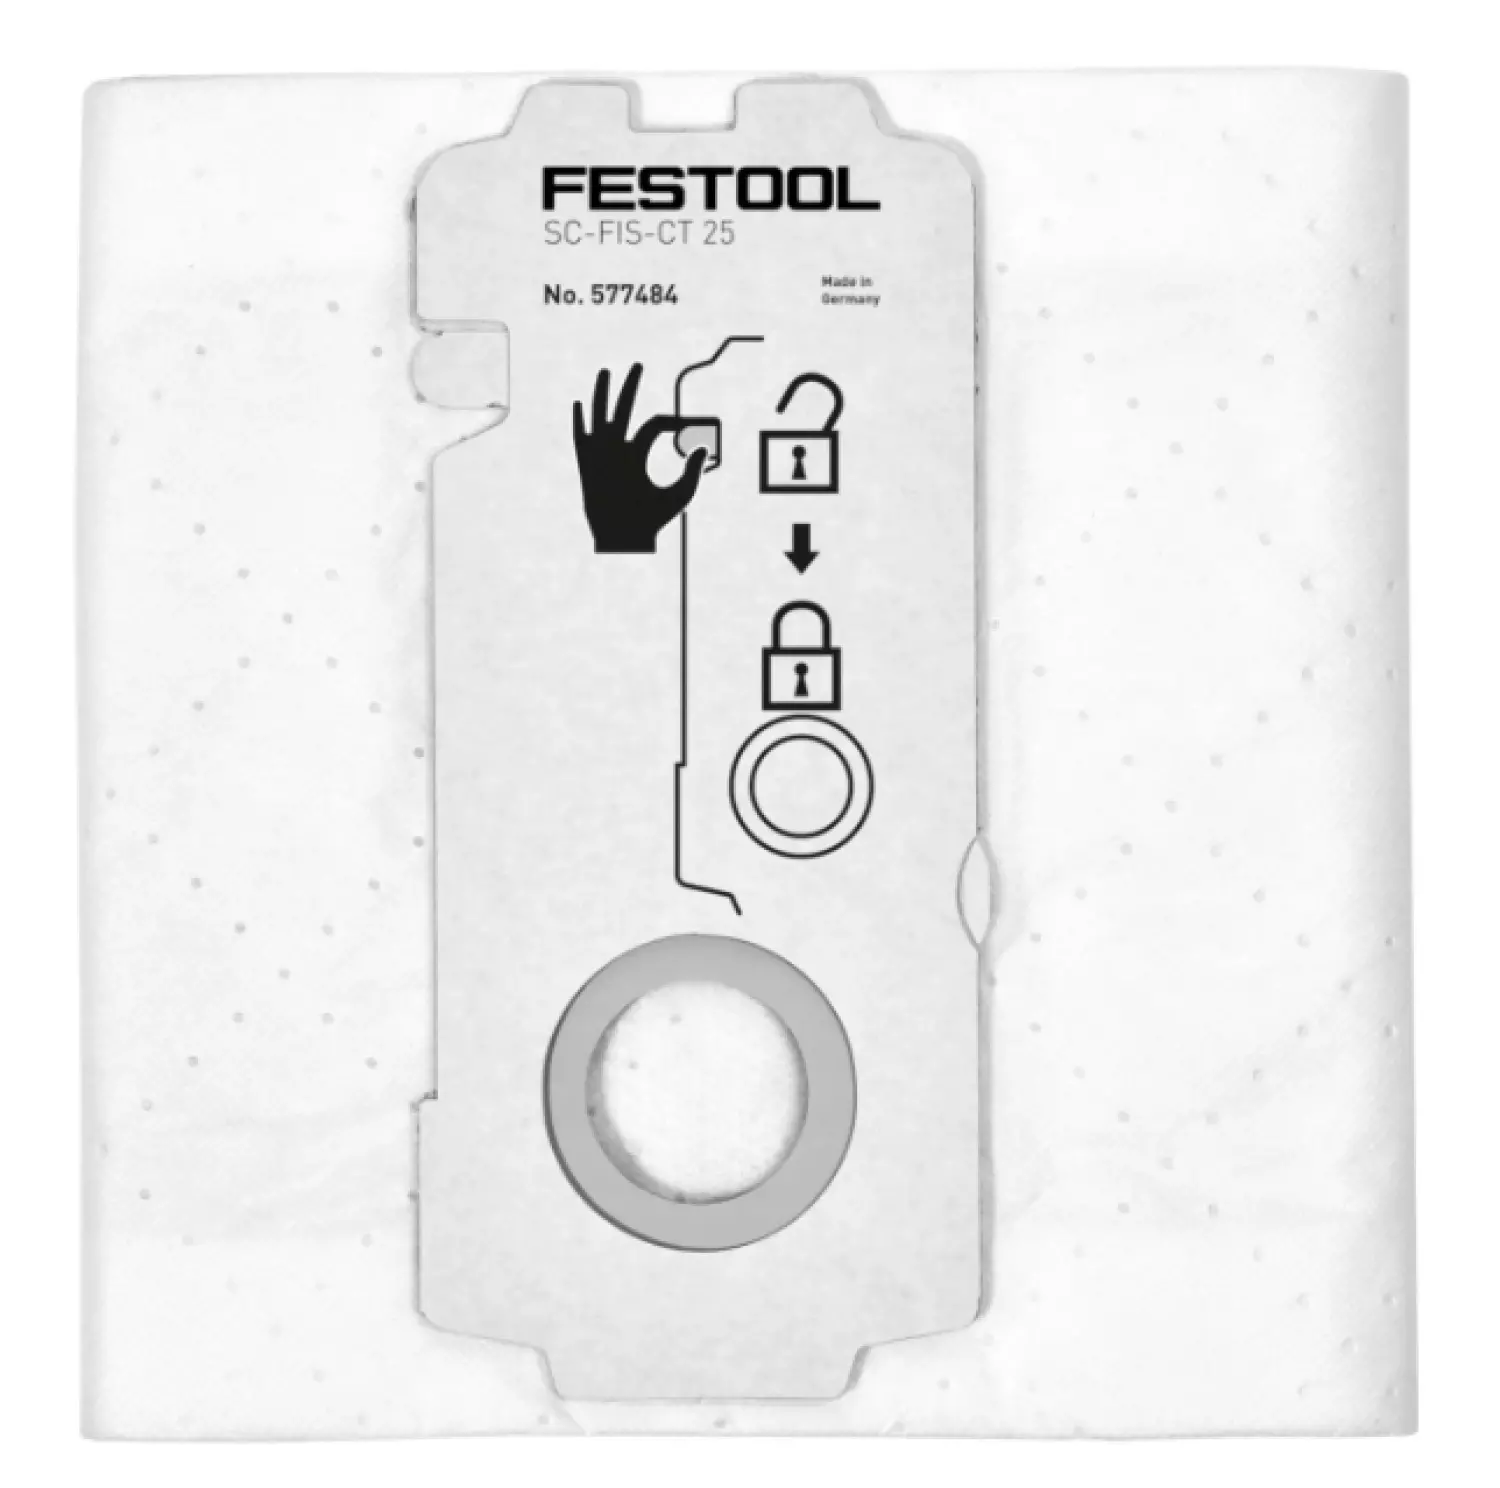 Festool SC-FIS-CT 25/5 SELFCLEAN sac filtre (5pcs)